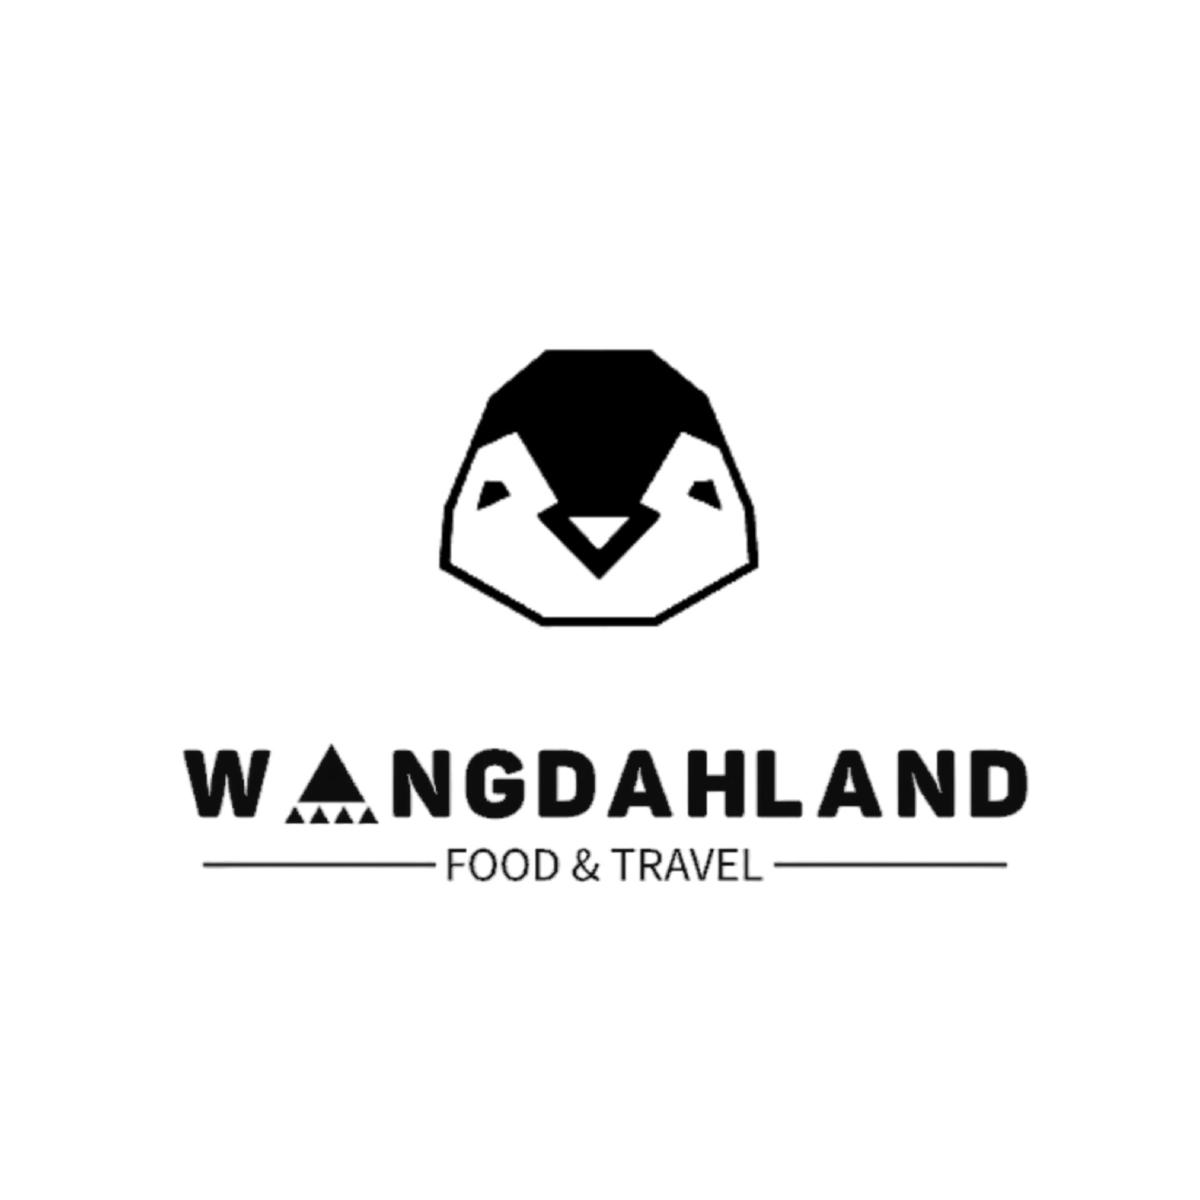 WangDahLand's images